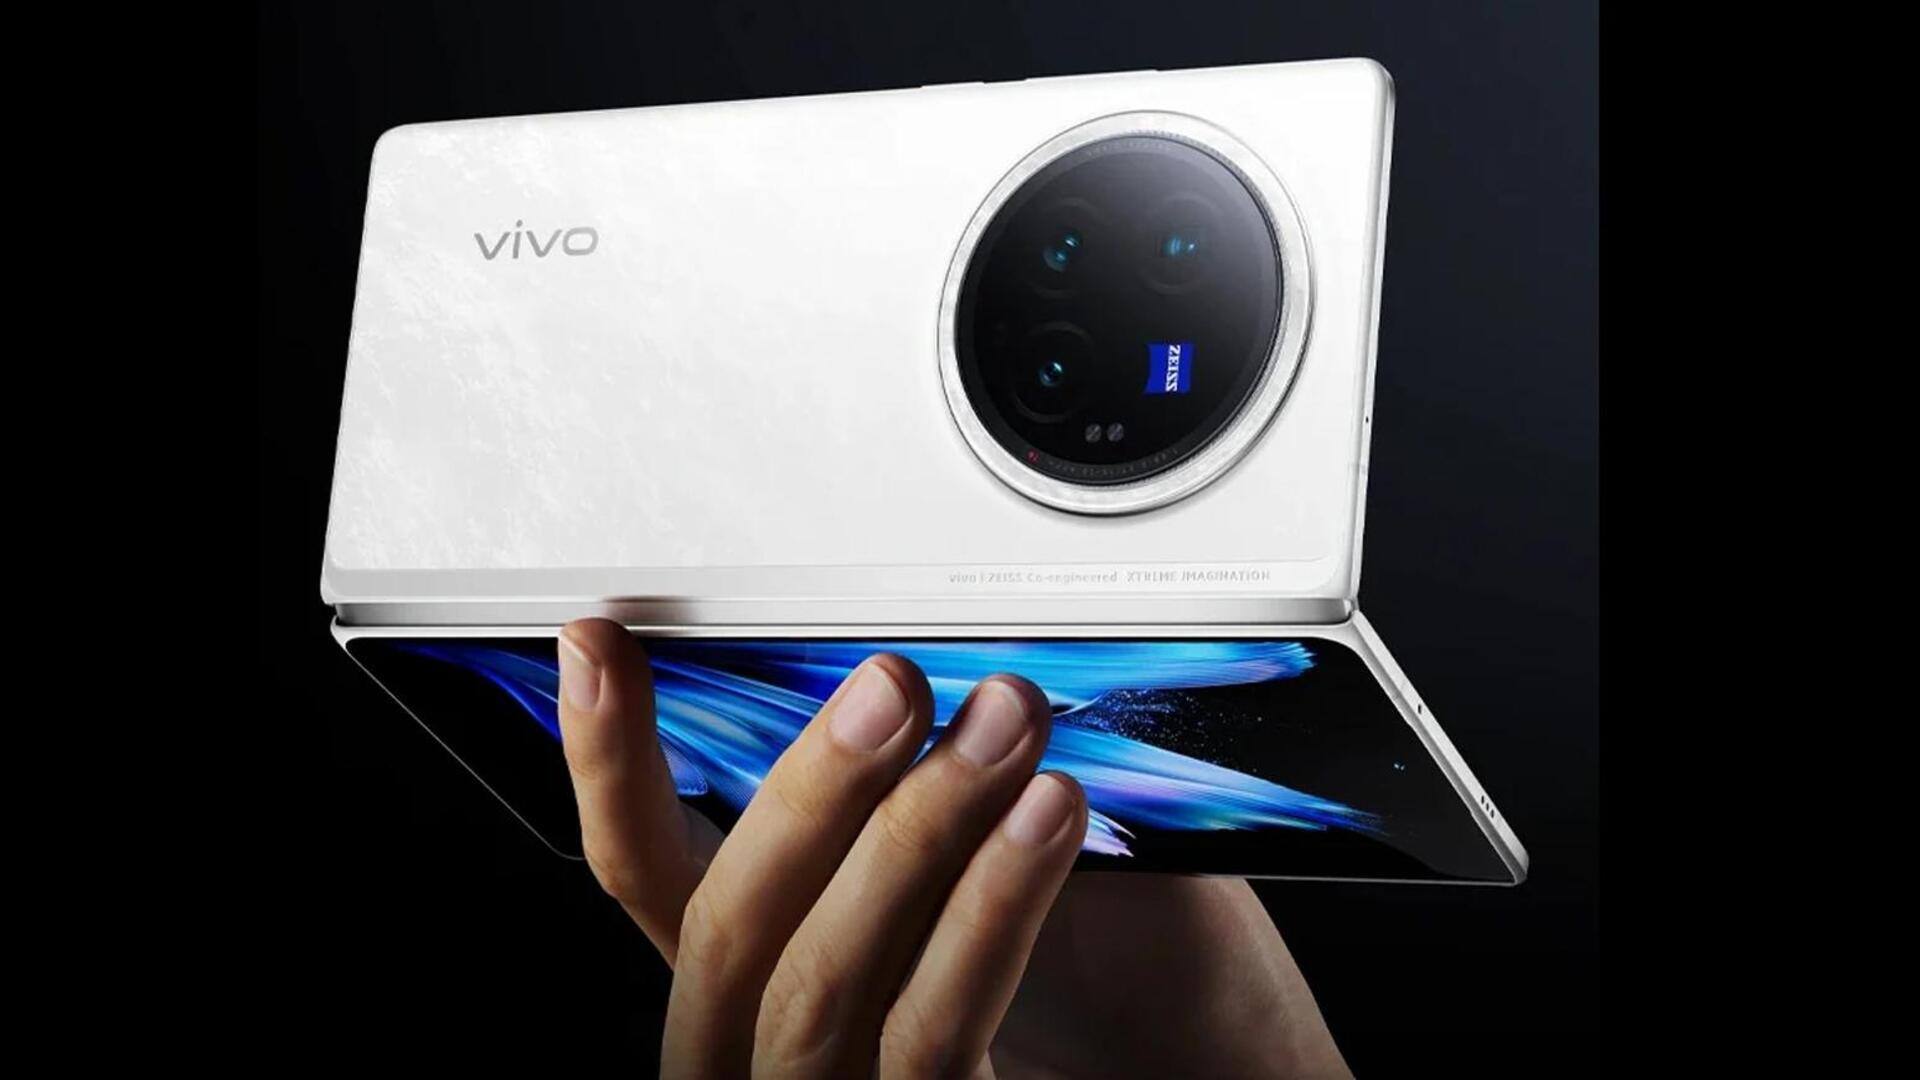 भारत में वीवो X फोल्ड 3 प्रो लॉन्च करेगी कंपनी, जानें संभावित फीचर्स और कीमत